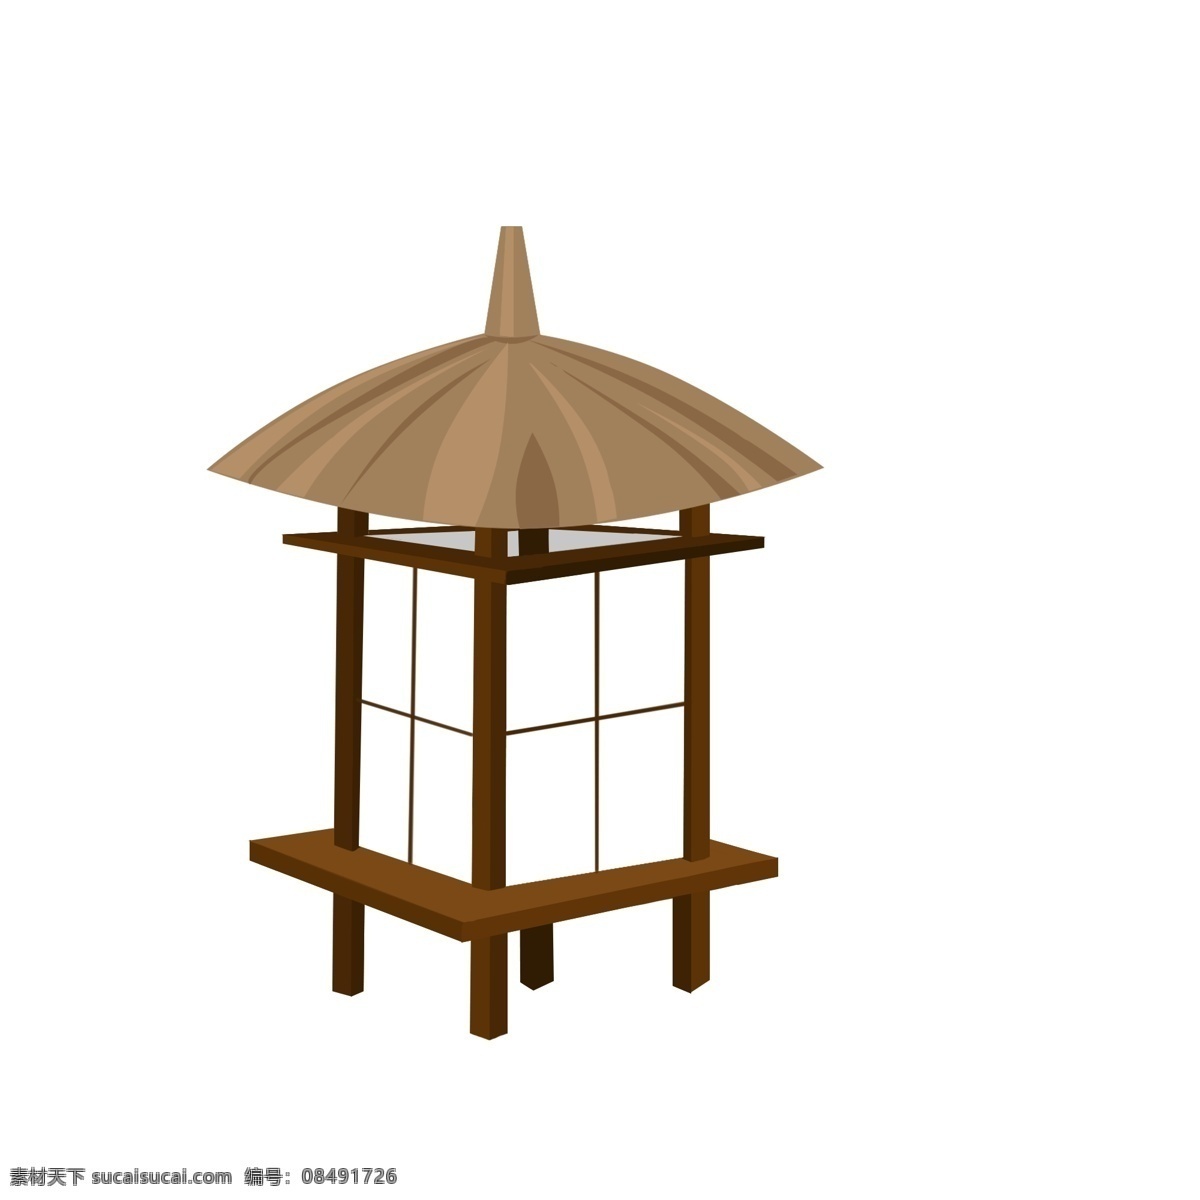 创意 日本 灯笼 插画 灯 灯盏 日本灯笼 日本灯笼插图 日式灯笼 一盏灯笼 复古日式灯笼